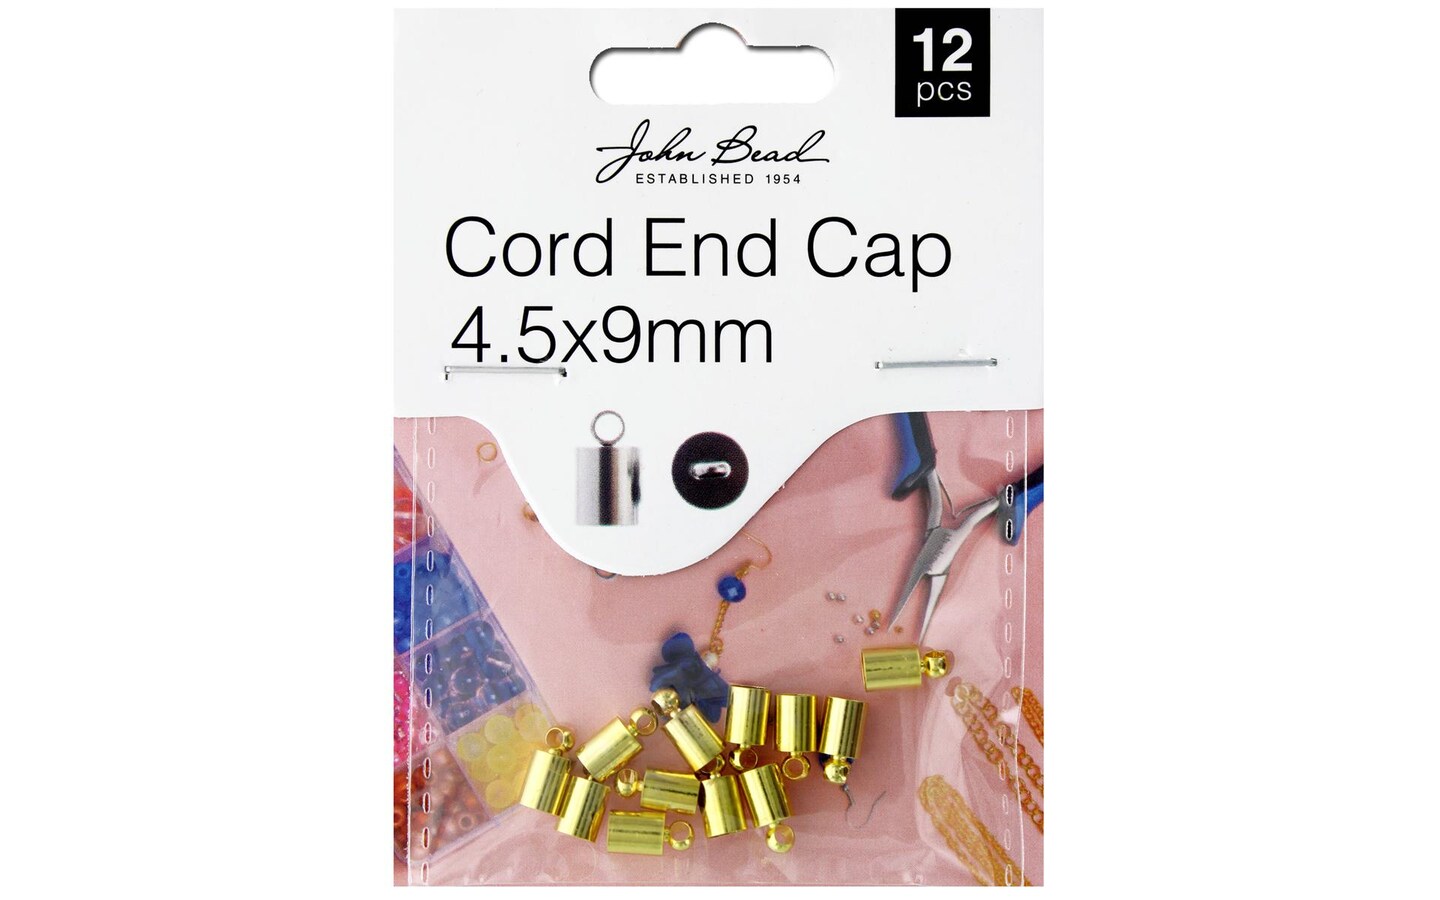 John Bead MHF Cord End Cap 4.5x9mm Gold 12pc